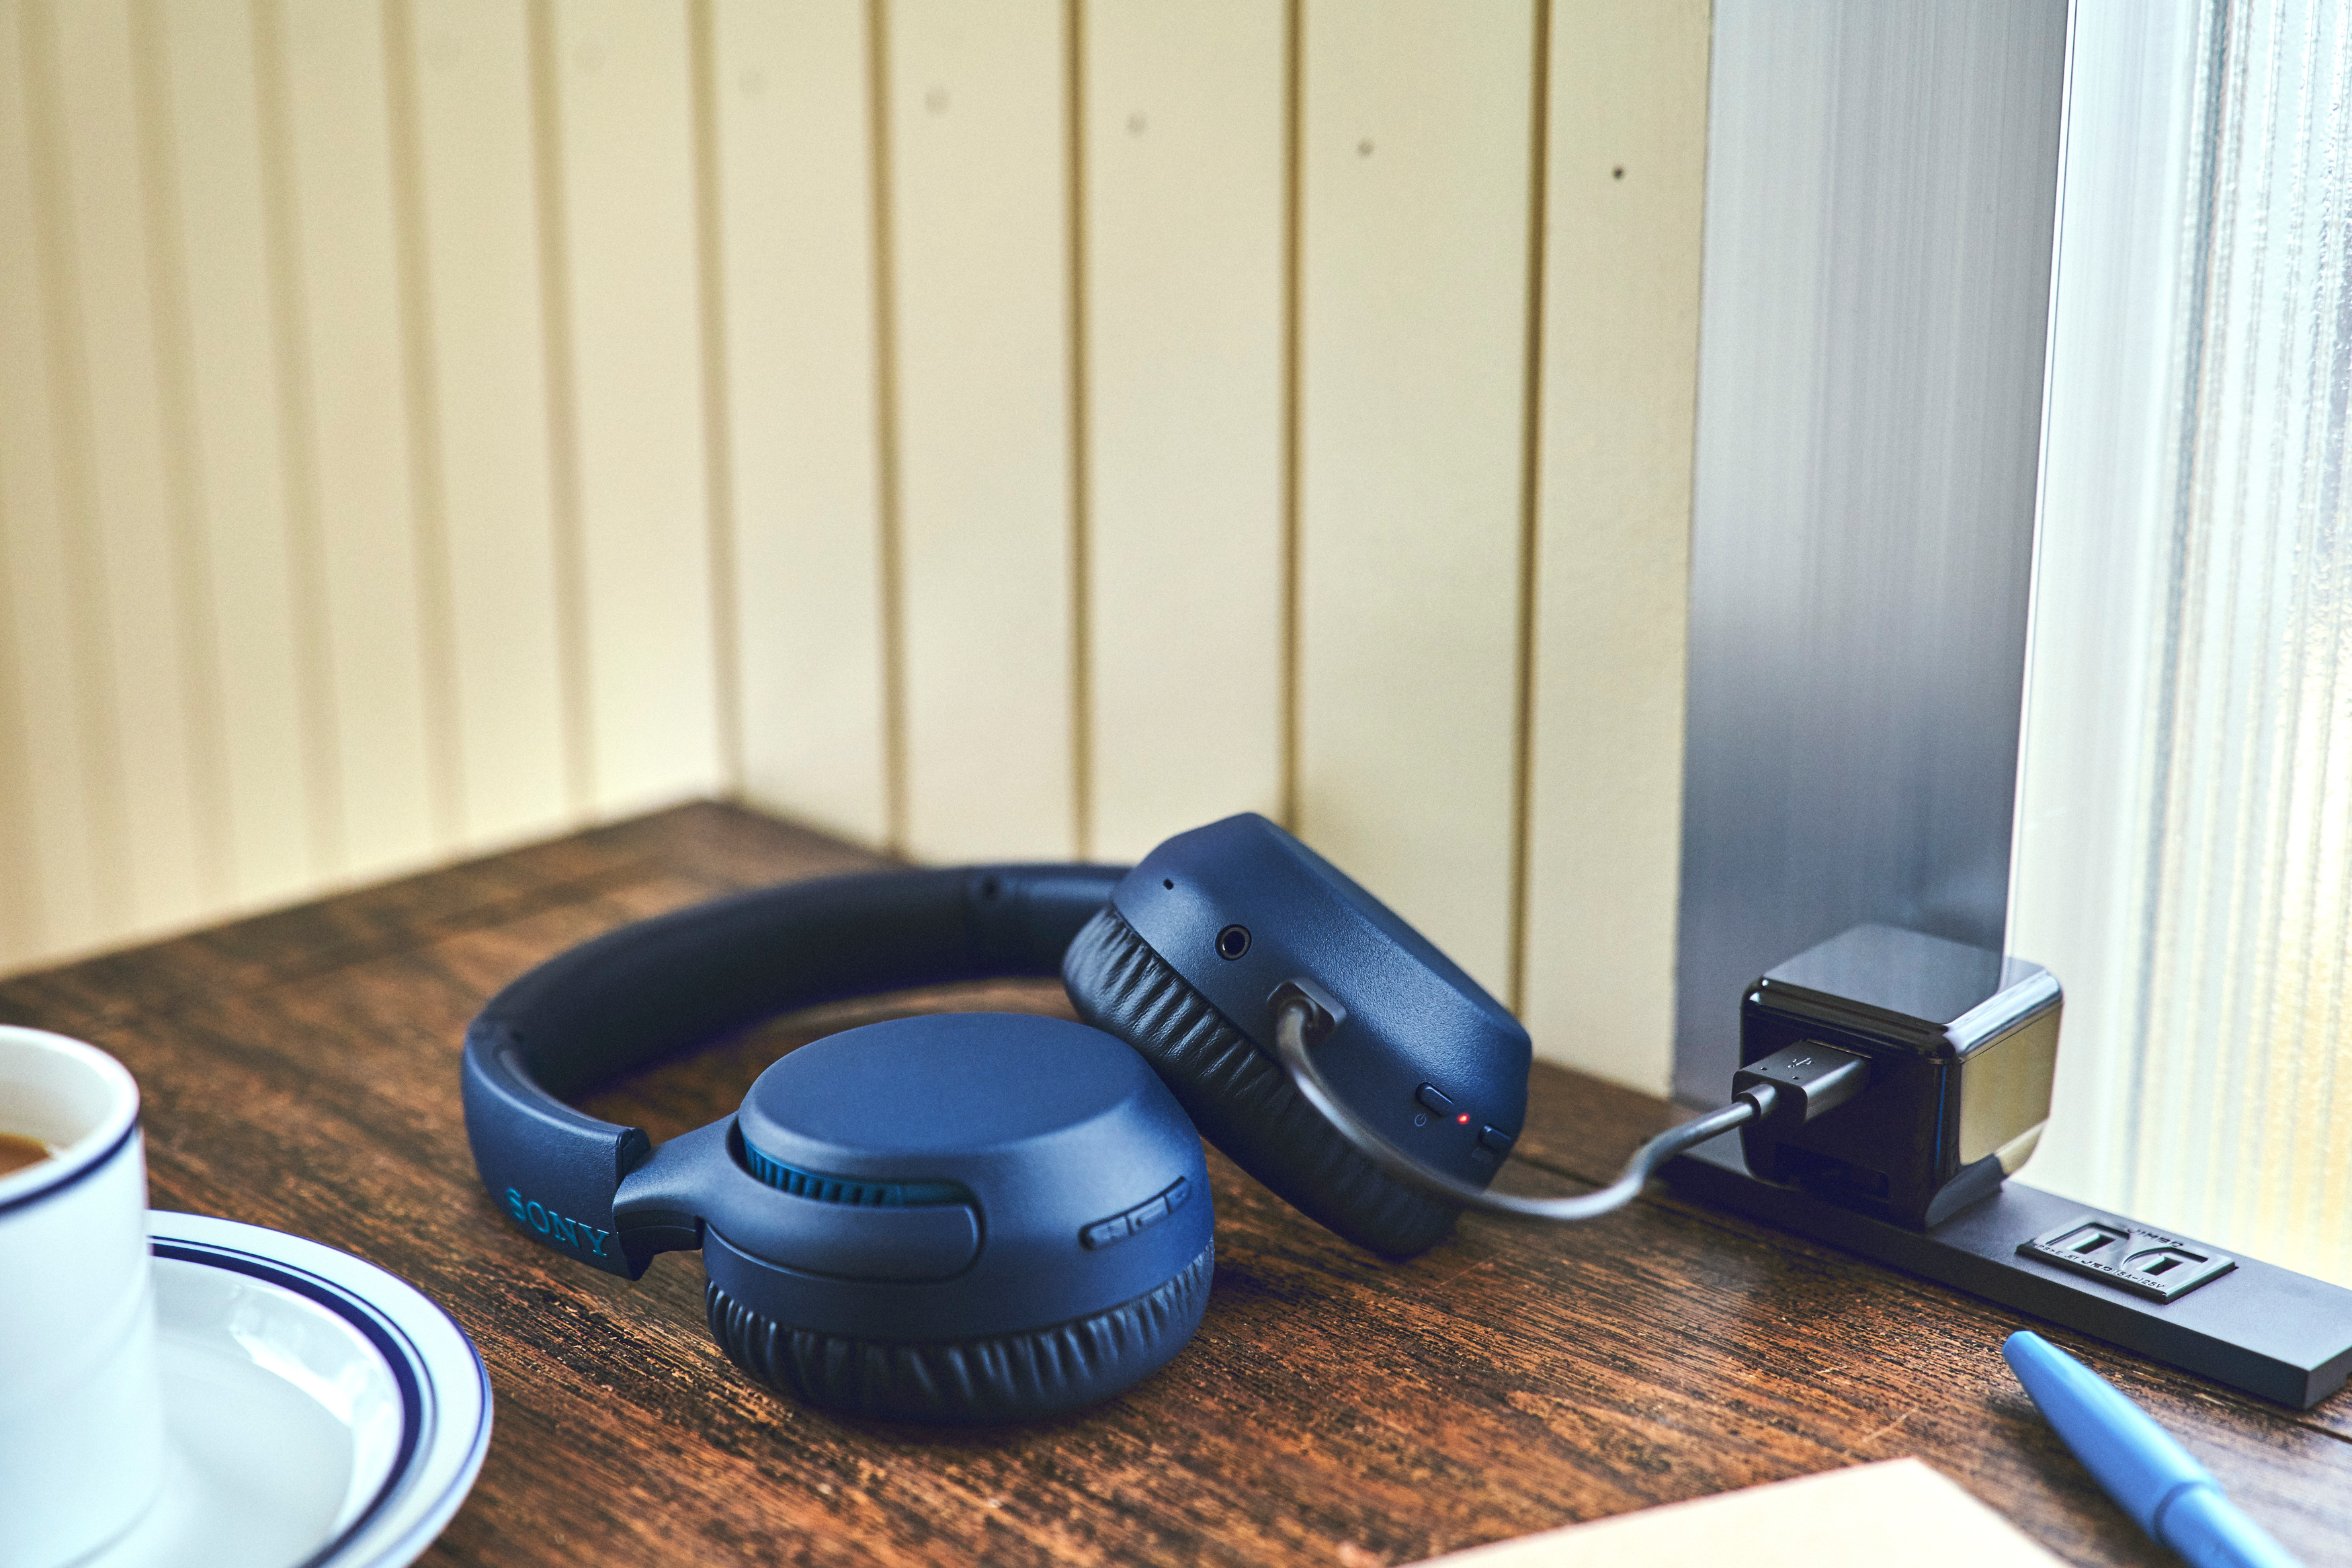 WH-XB700, Bluetooth Blau Kopfhörer SONY On-ear